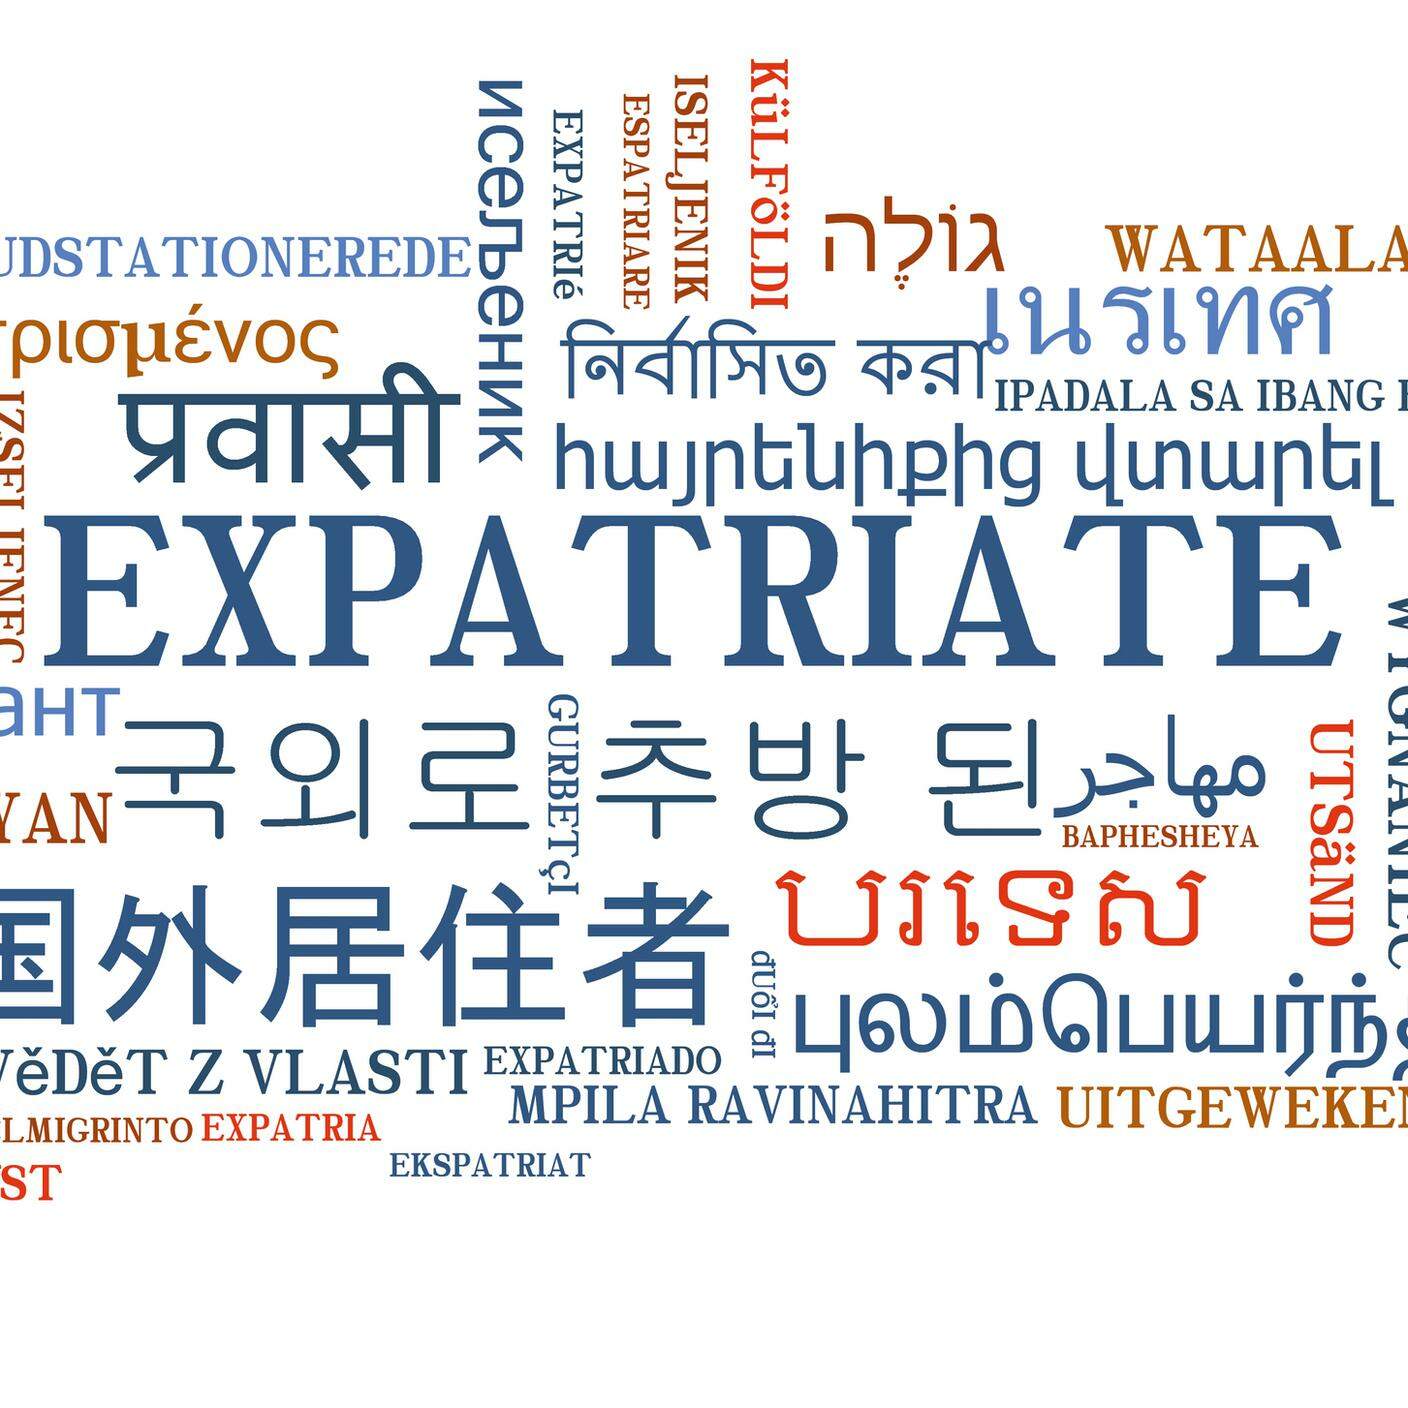 Espatriare in diverse lingue